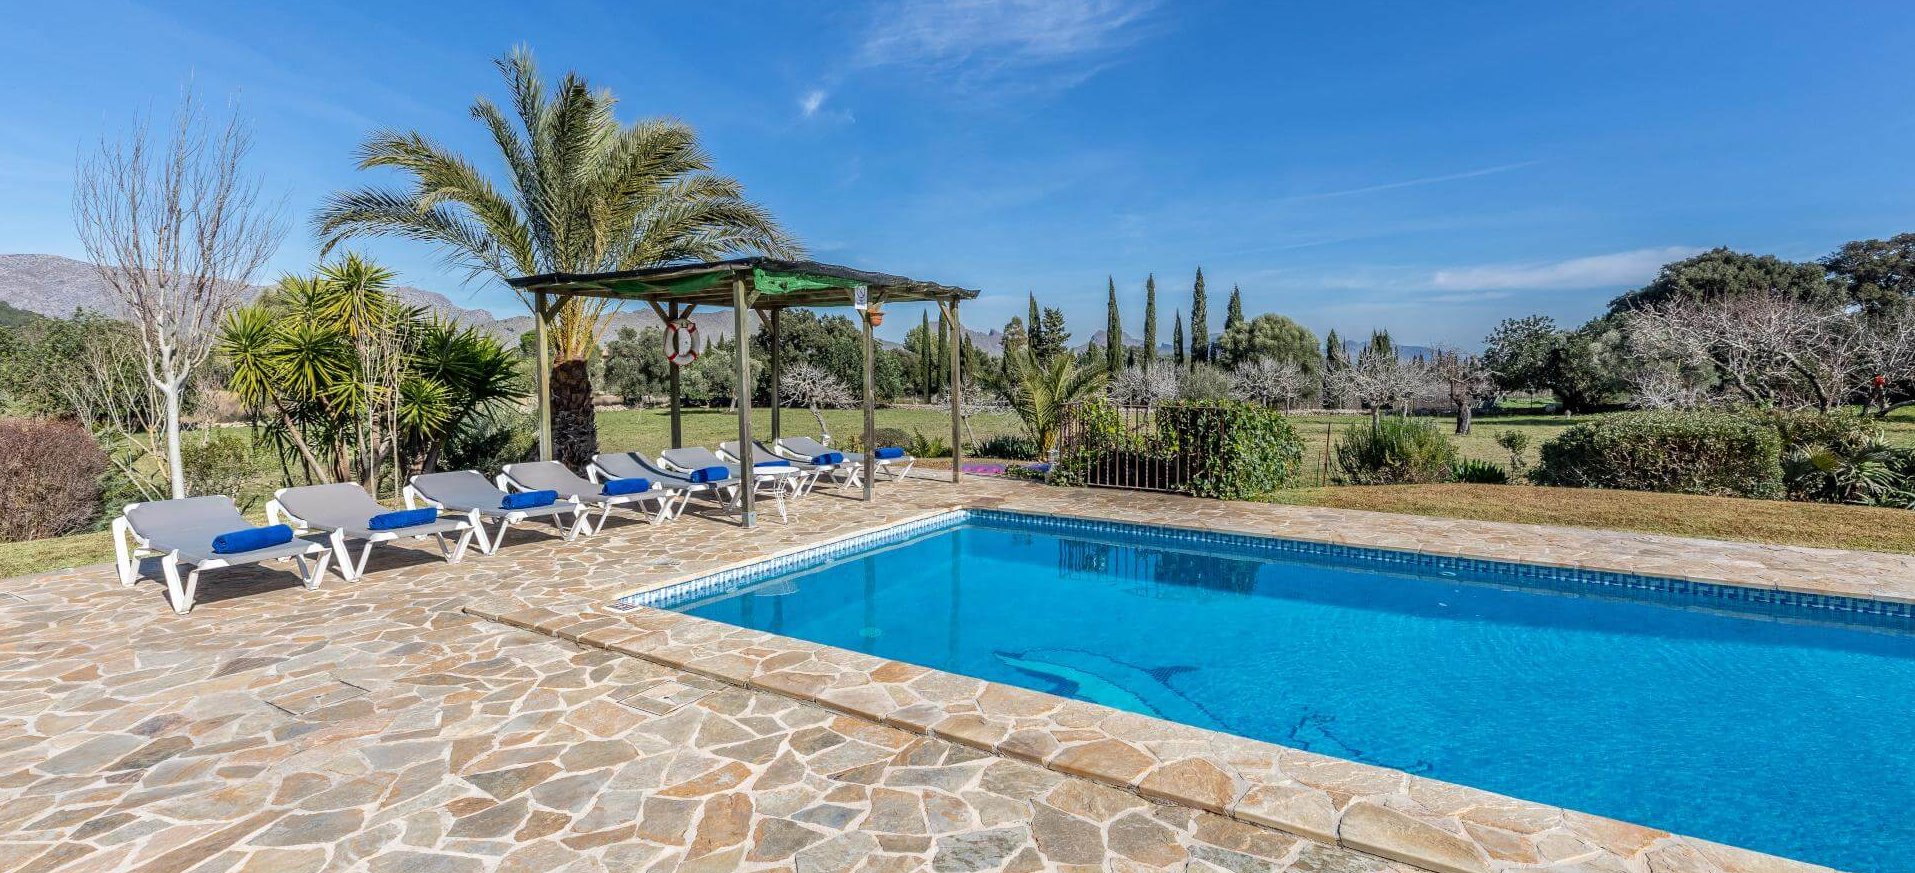 Ferienhaus Mallorca mit Pool und Ausblick.